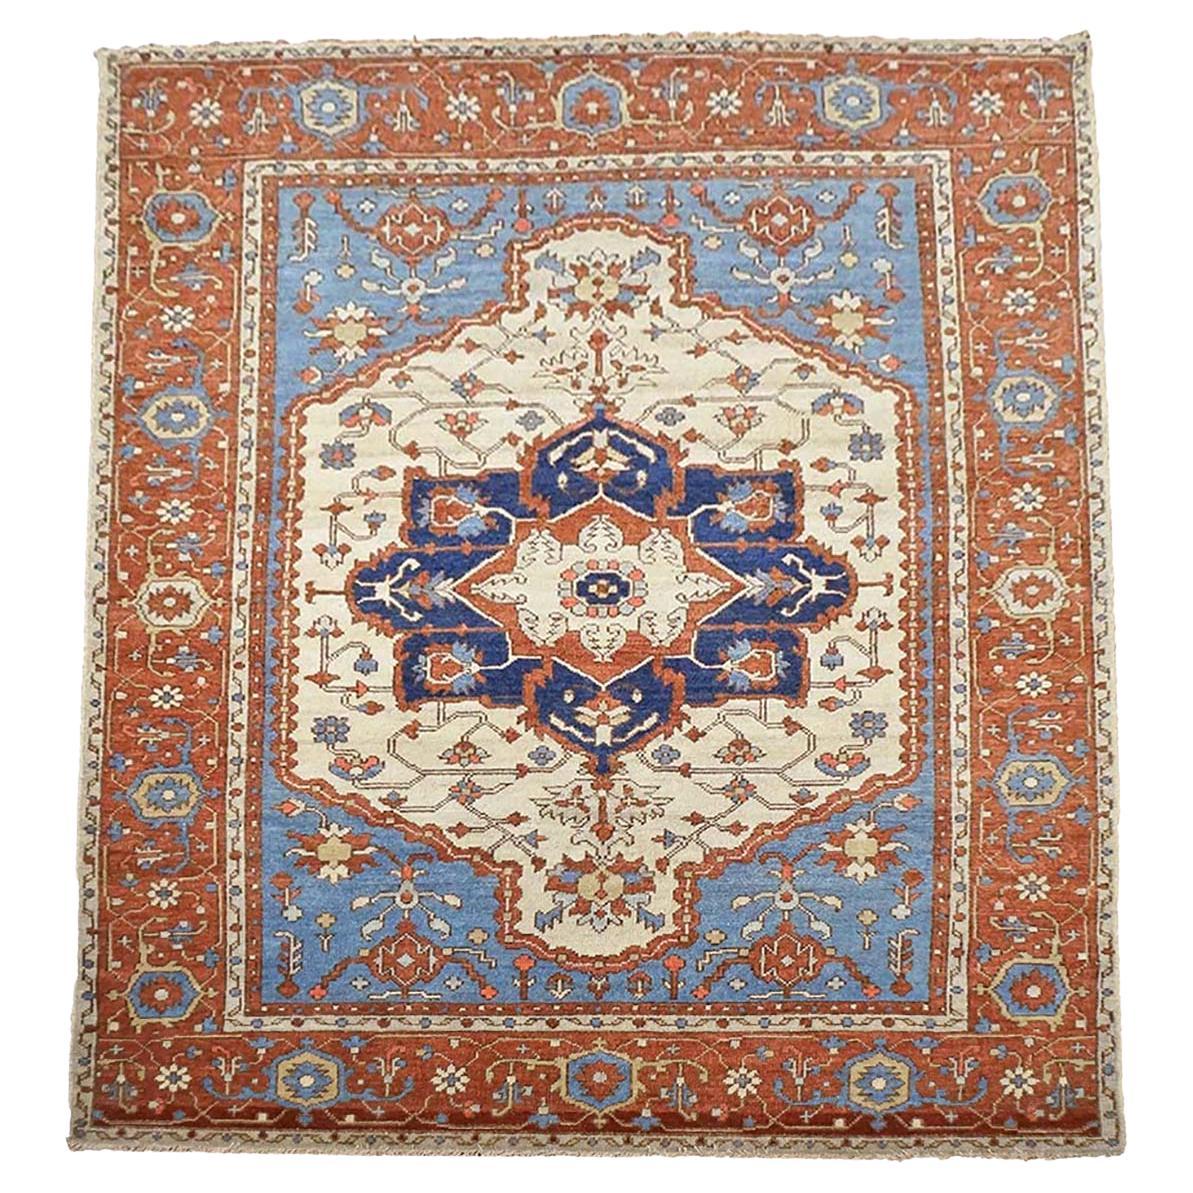 Serapi 5x7 Rostfarbener, elfenbeinfarbener und blauer handgefertigter Teppich #1143113, 21. Jahrhundert